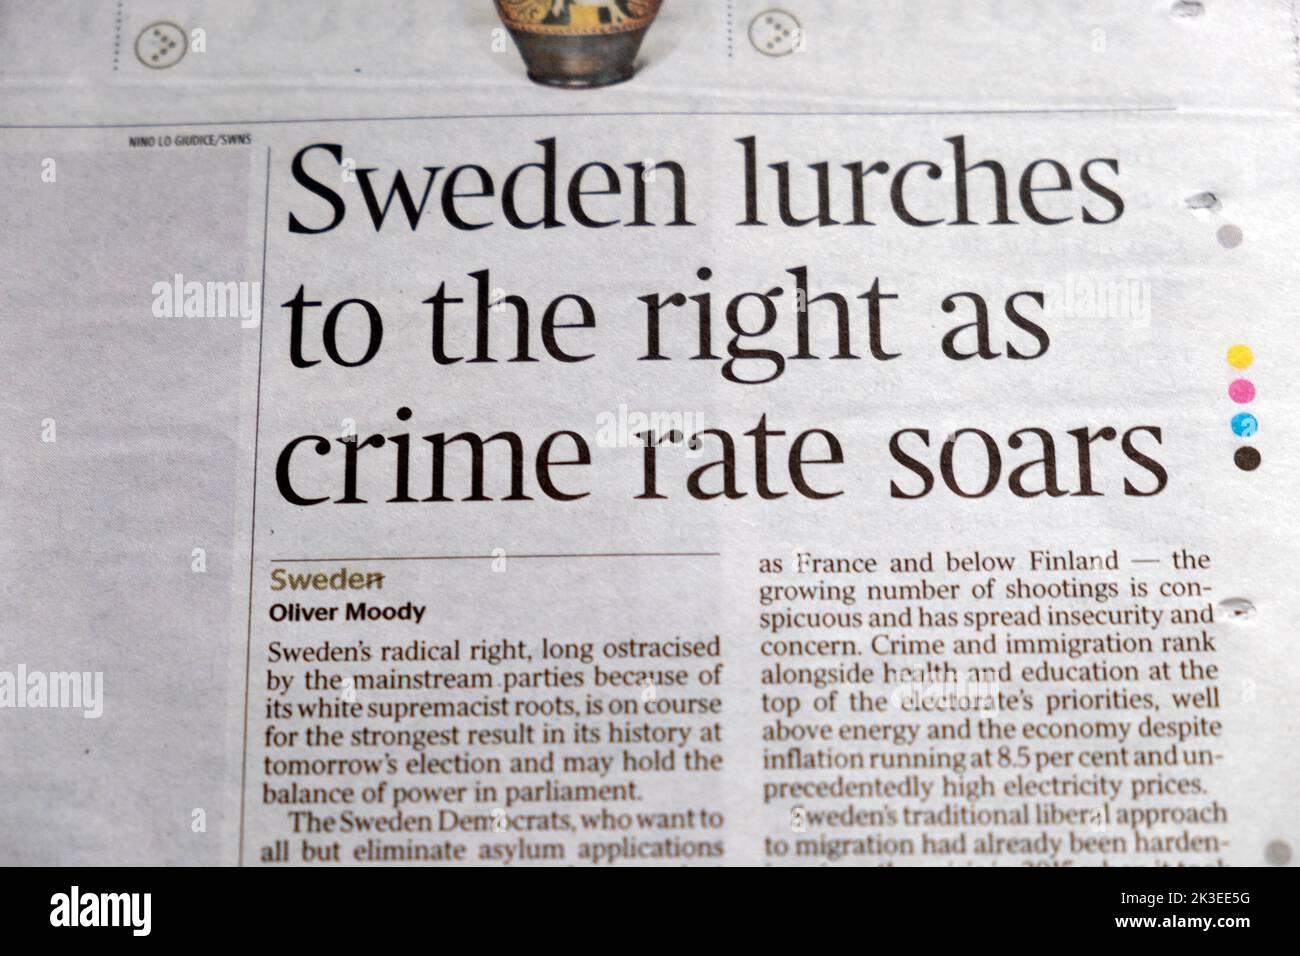 'La Svezia vacilla a destra mentre il tasso di criminalità sale' l'articolo del giornale Times taglio taglio 10 settembre 2022 Londra UK Foto Stock